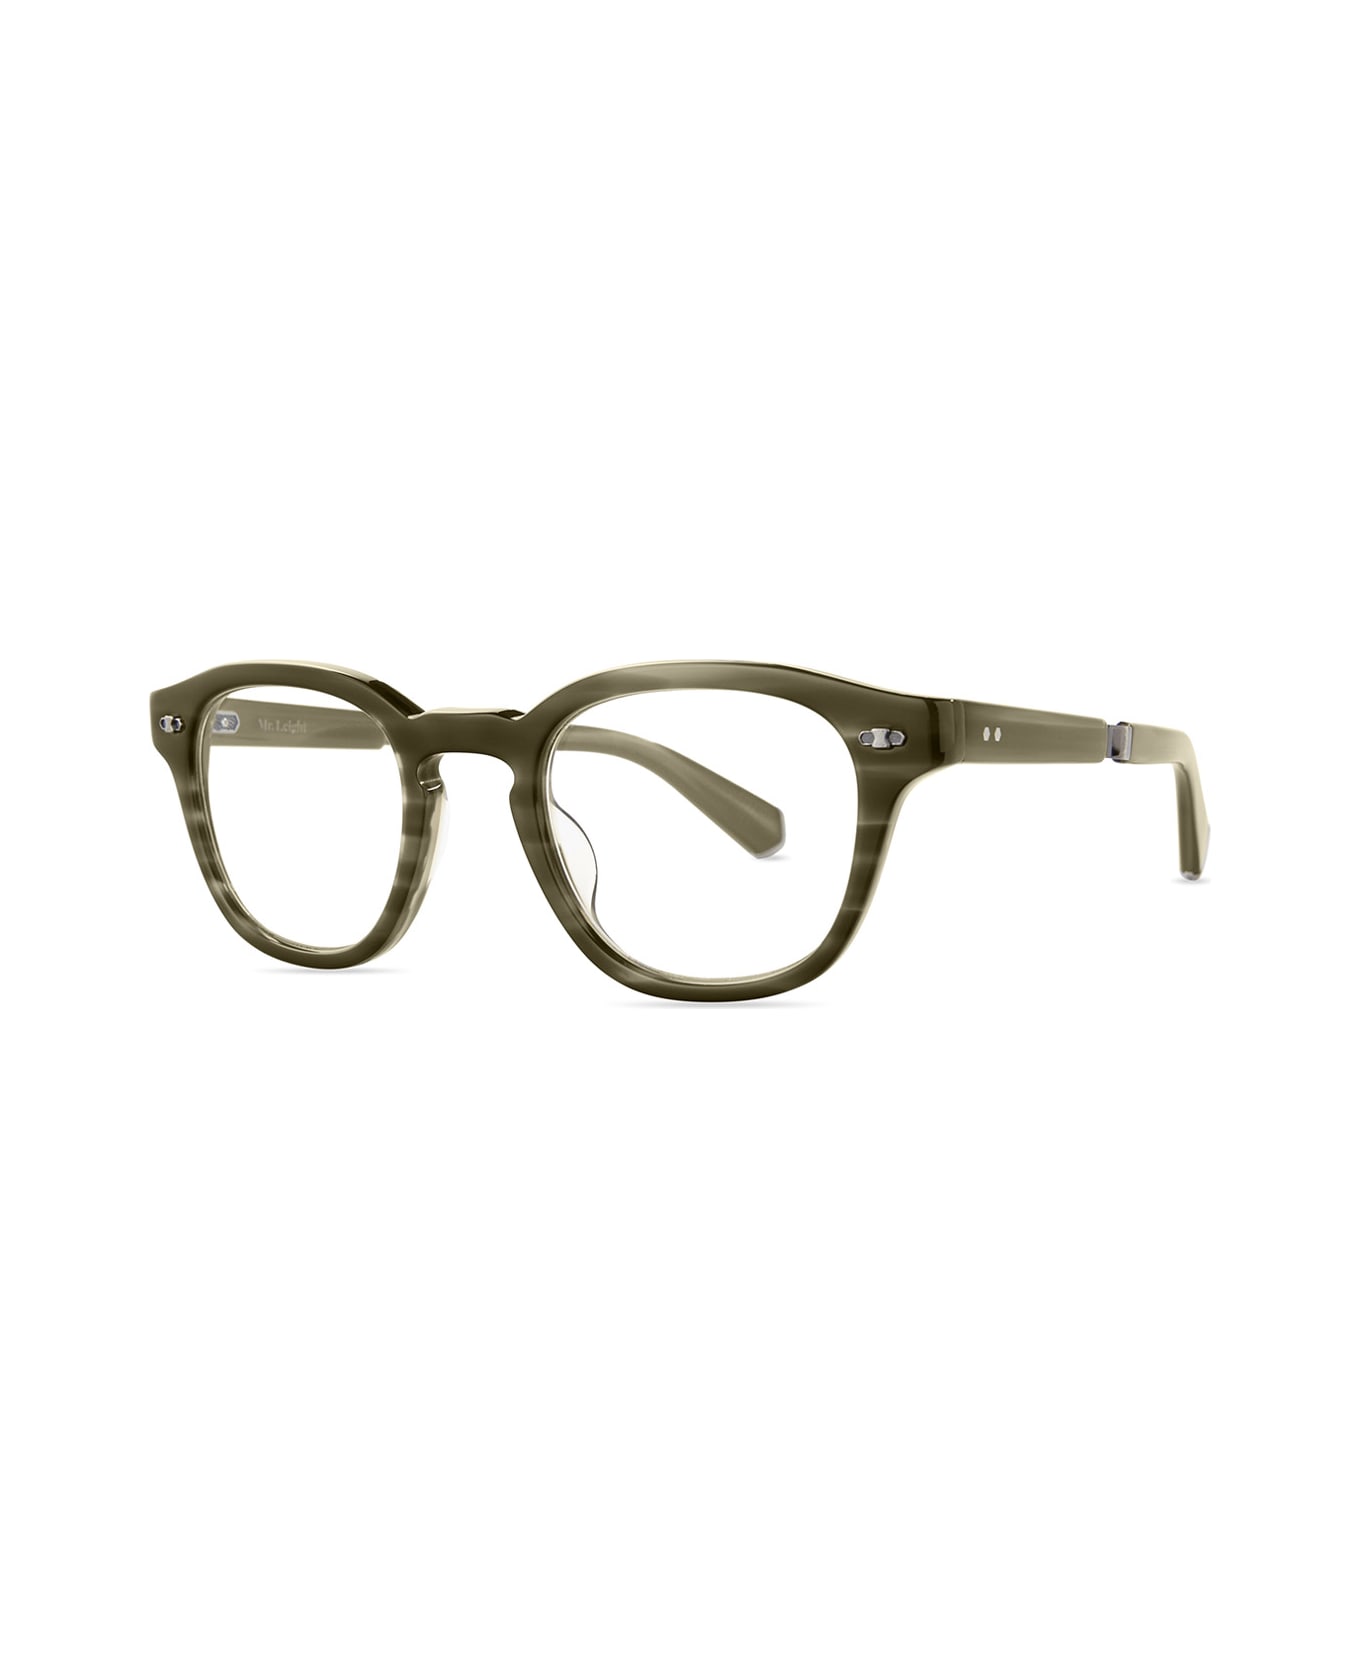 Mr. Leight James C Kelp-pewter Glasses - Kelp-Pewter